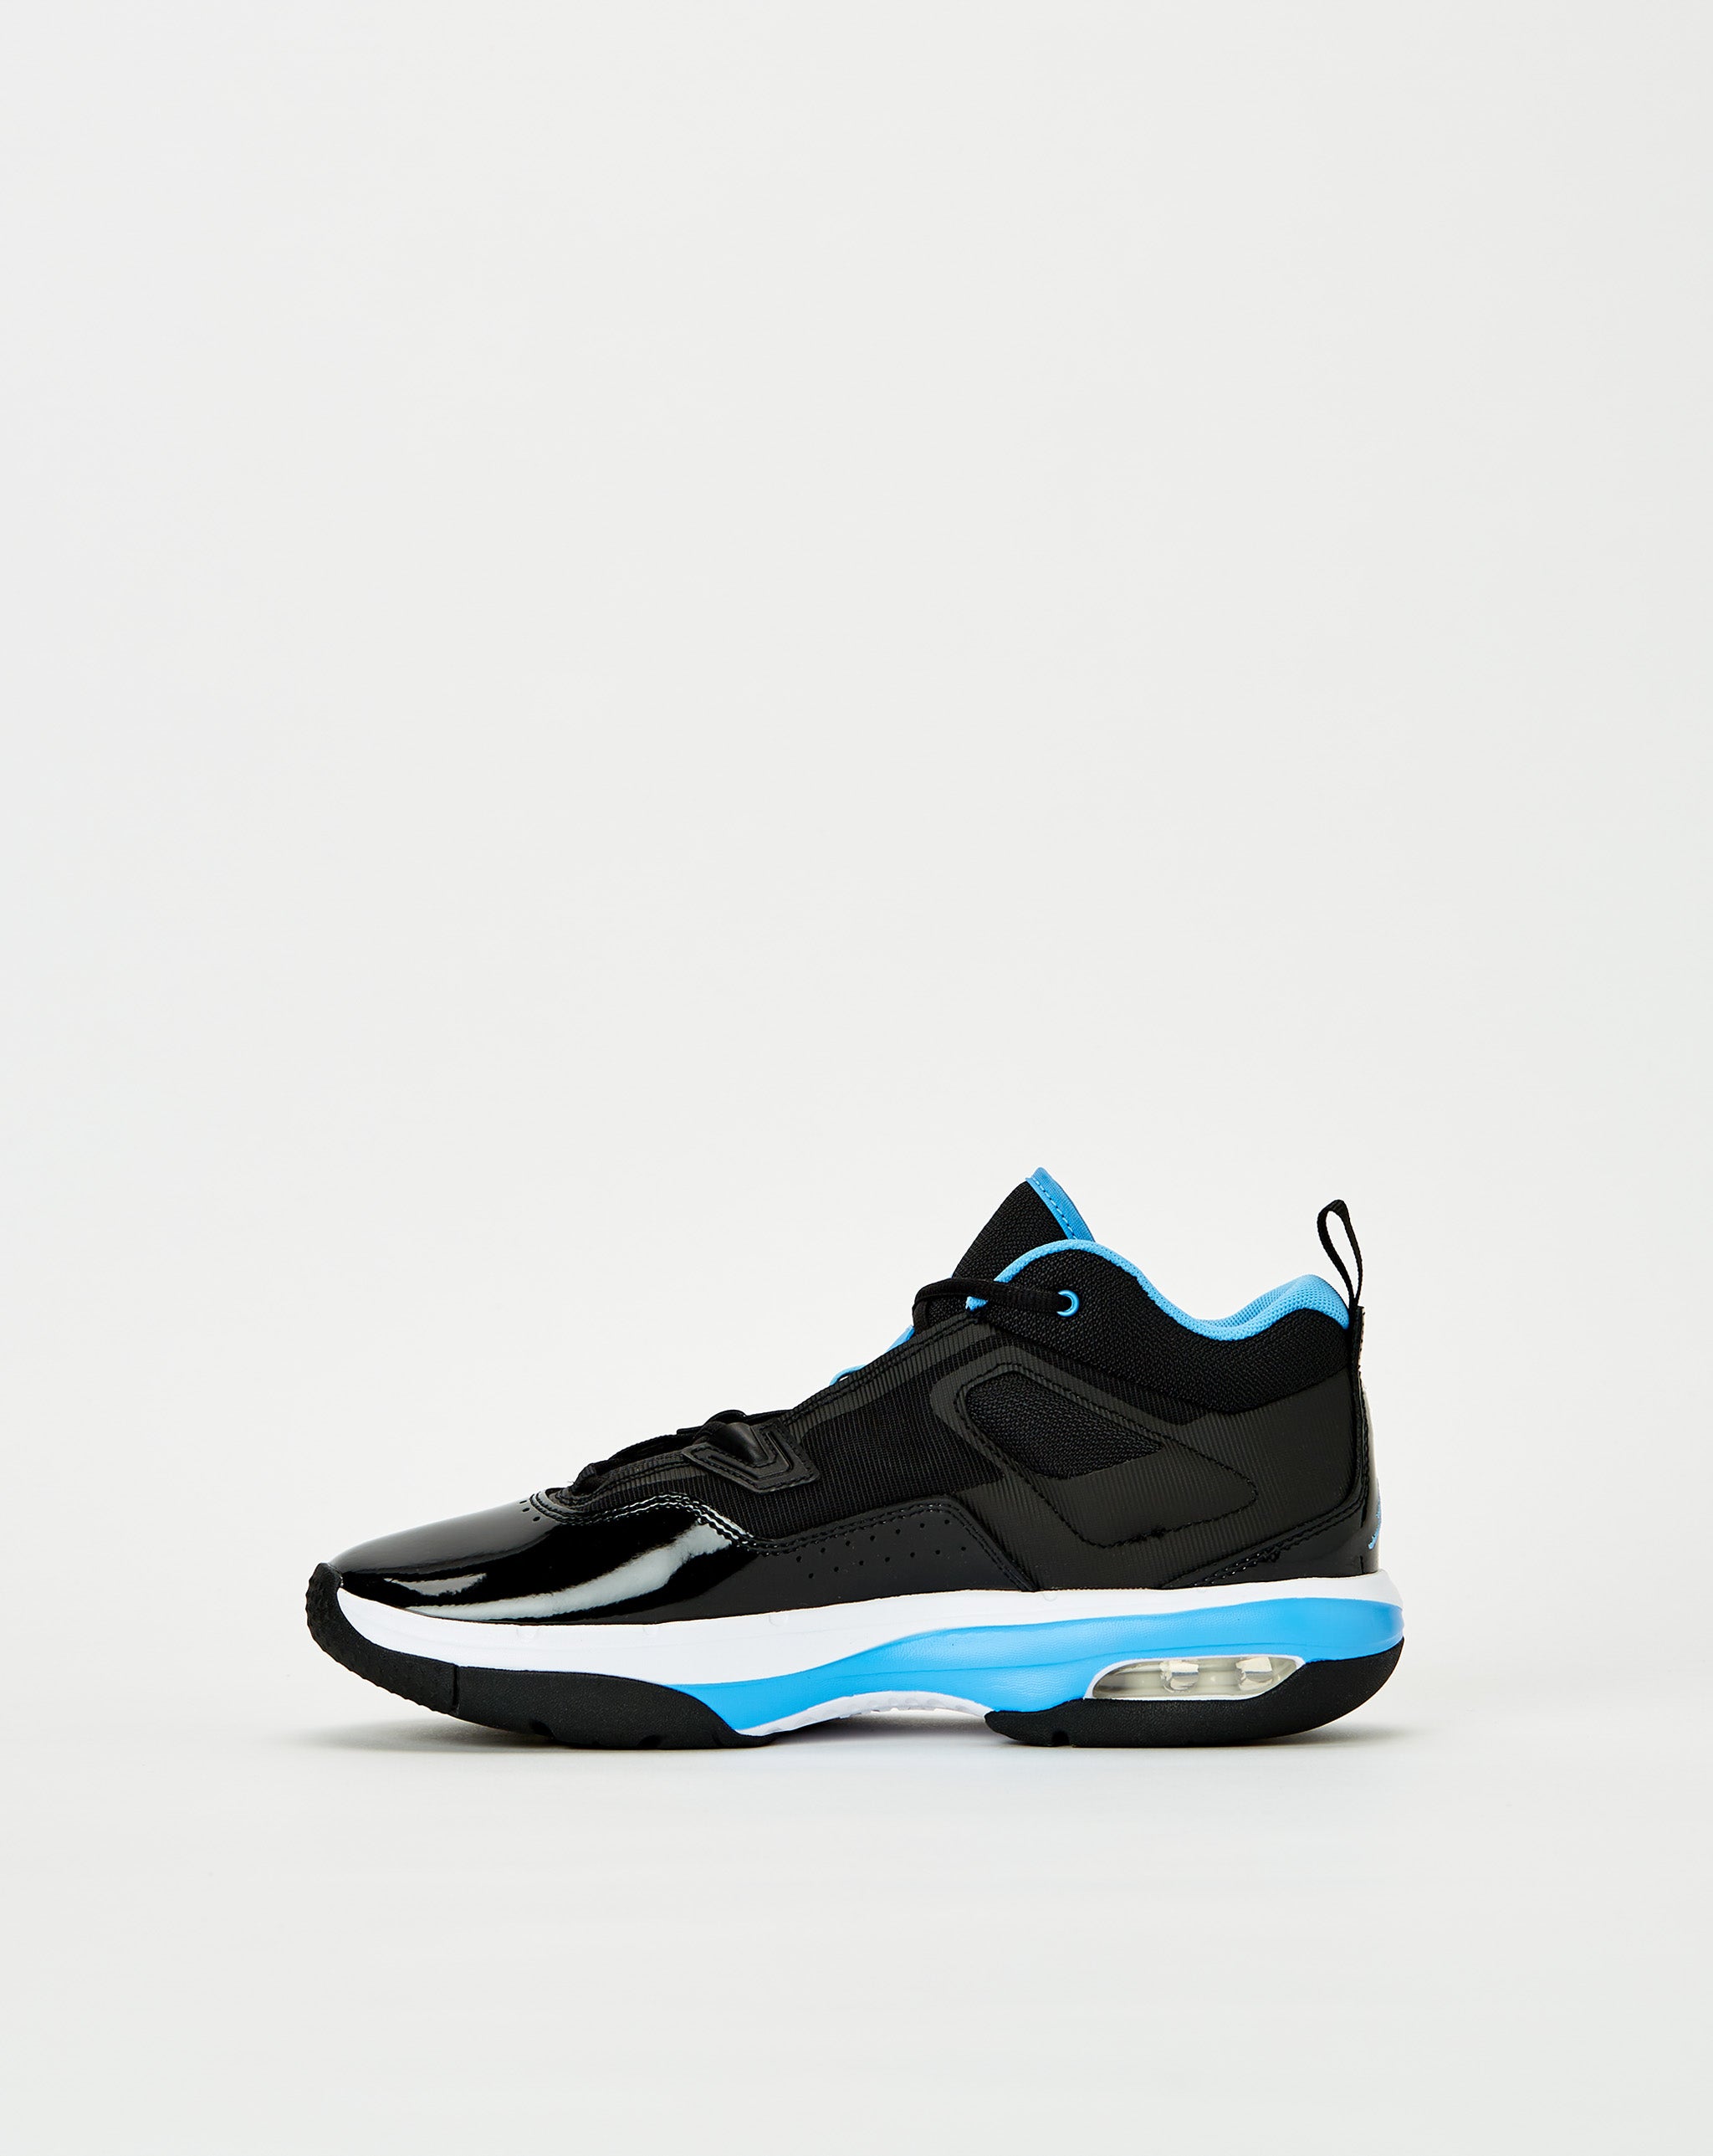 Air Jordan VANS Sneaker alta Sk8-Hi nero  - Cheap Urlfreeze Jordan outlet